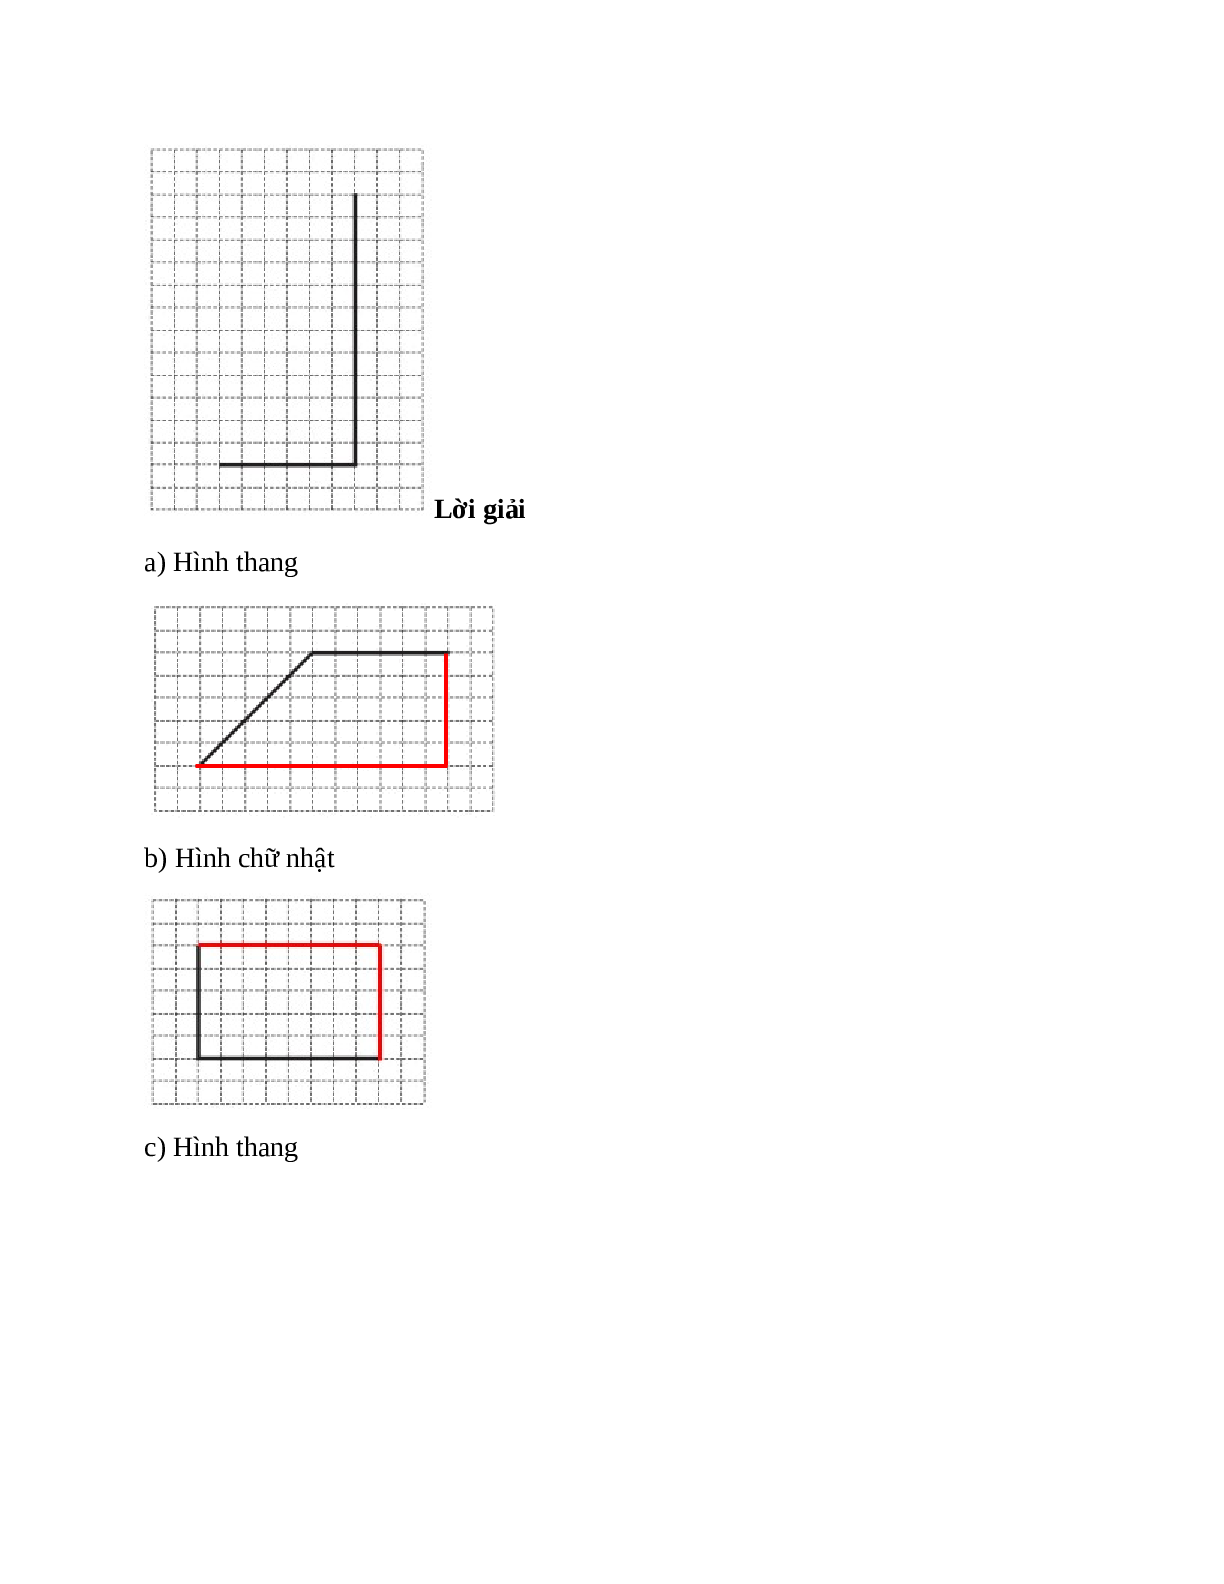 Vẽ thêm hai đoạn thẳng vào mỗi hình sau để được: Hình thang (trang 2)